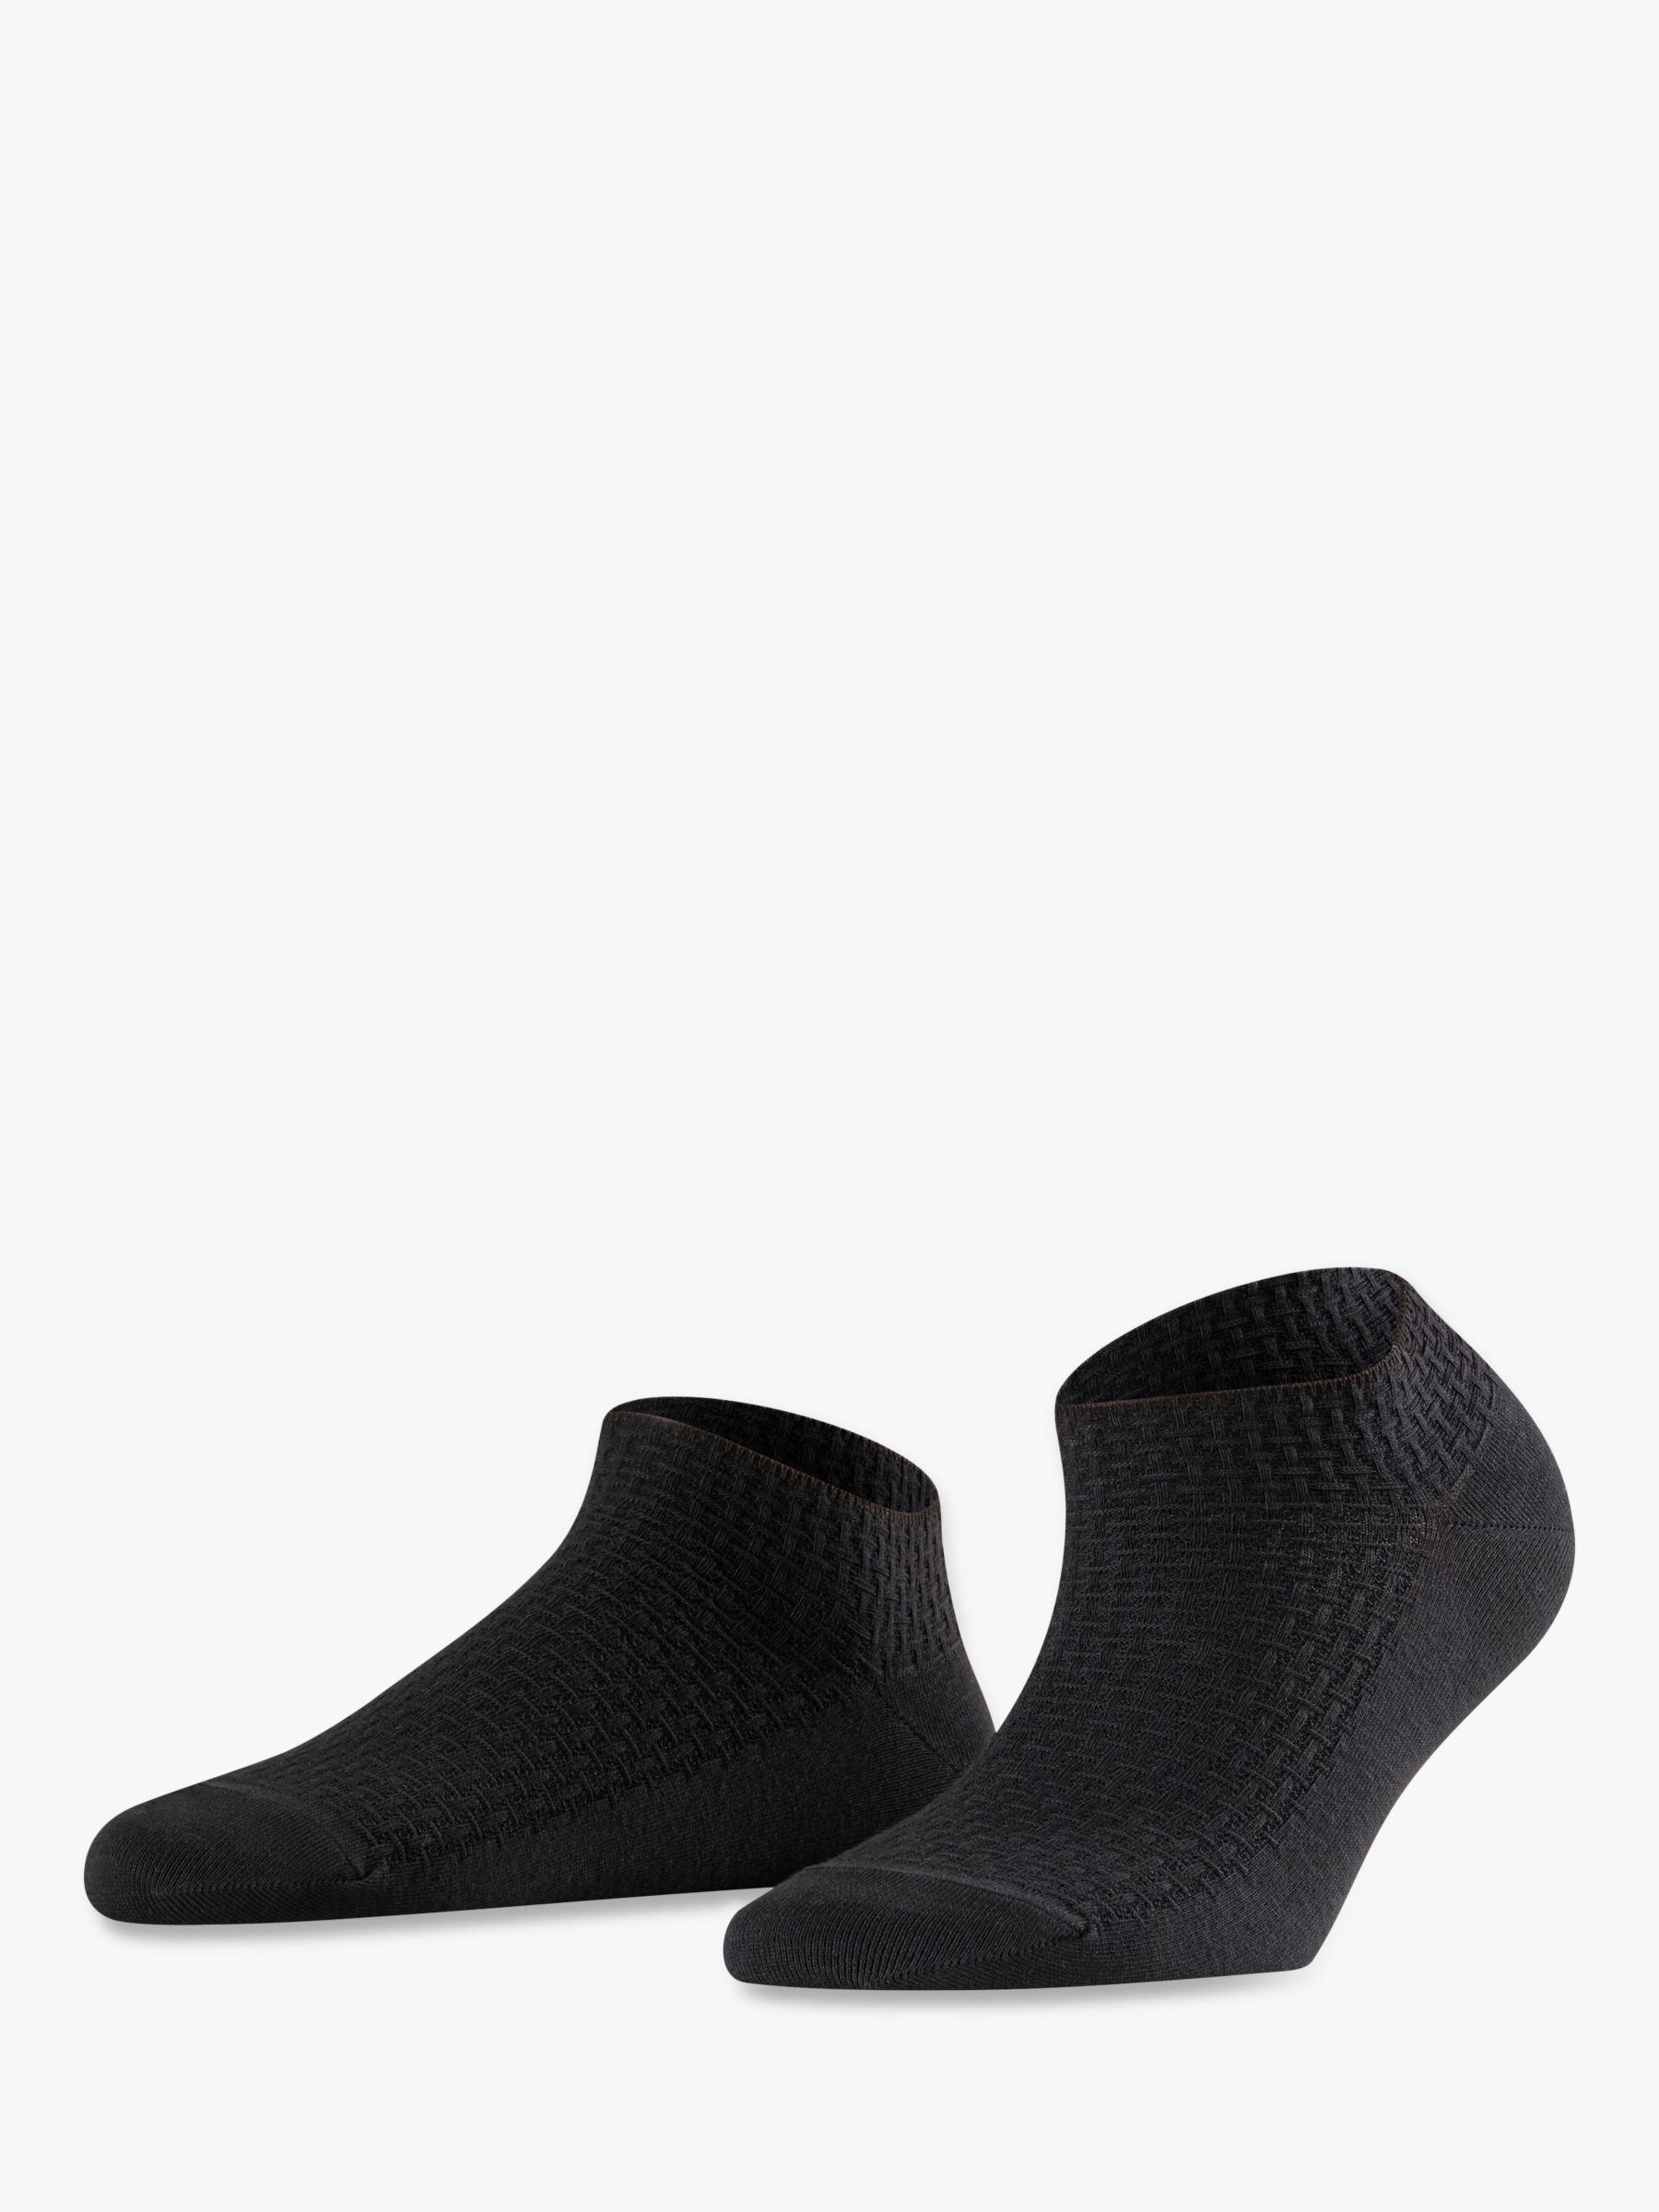 FALKE Dry Textured Trainer Socks, Black